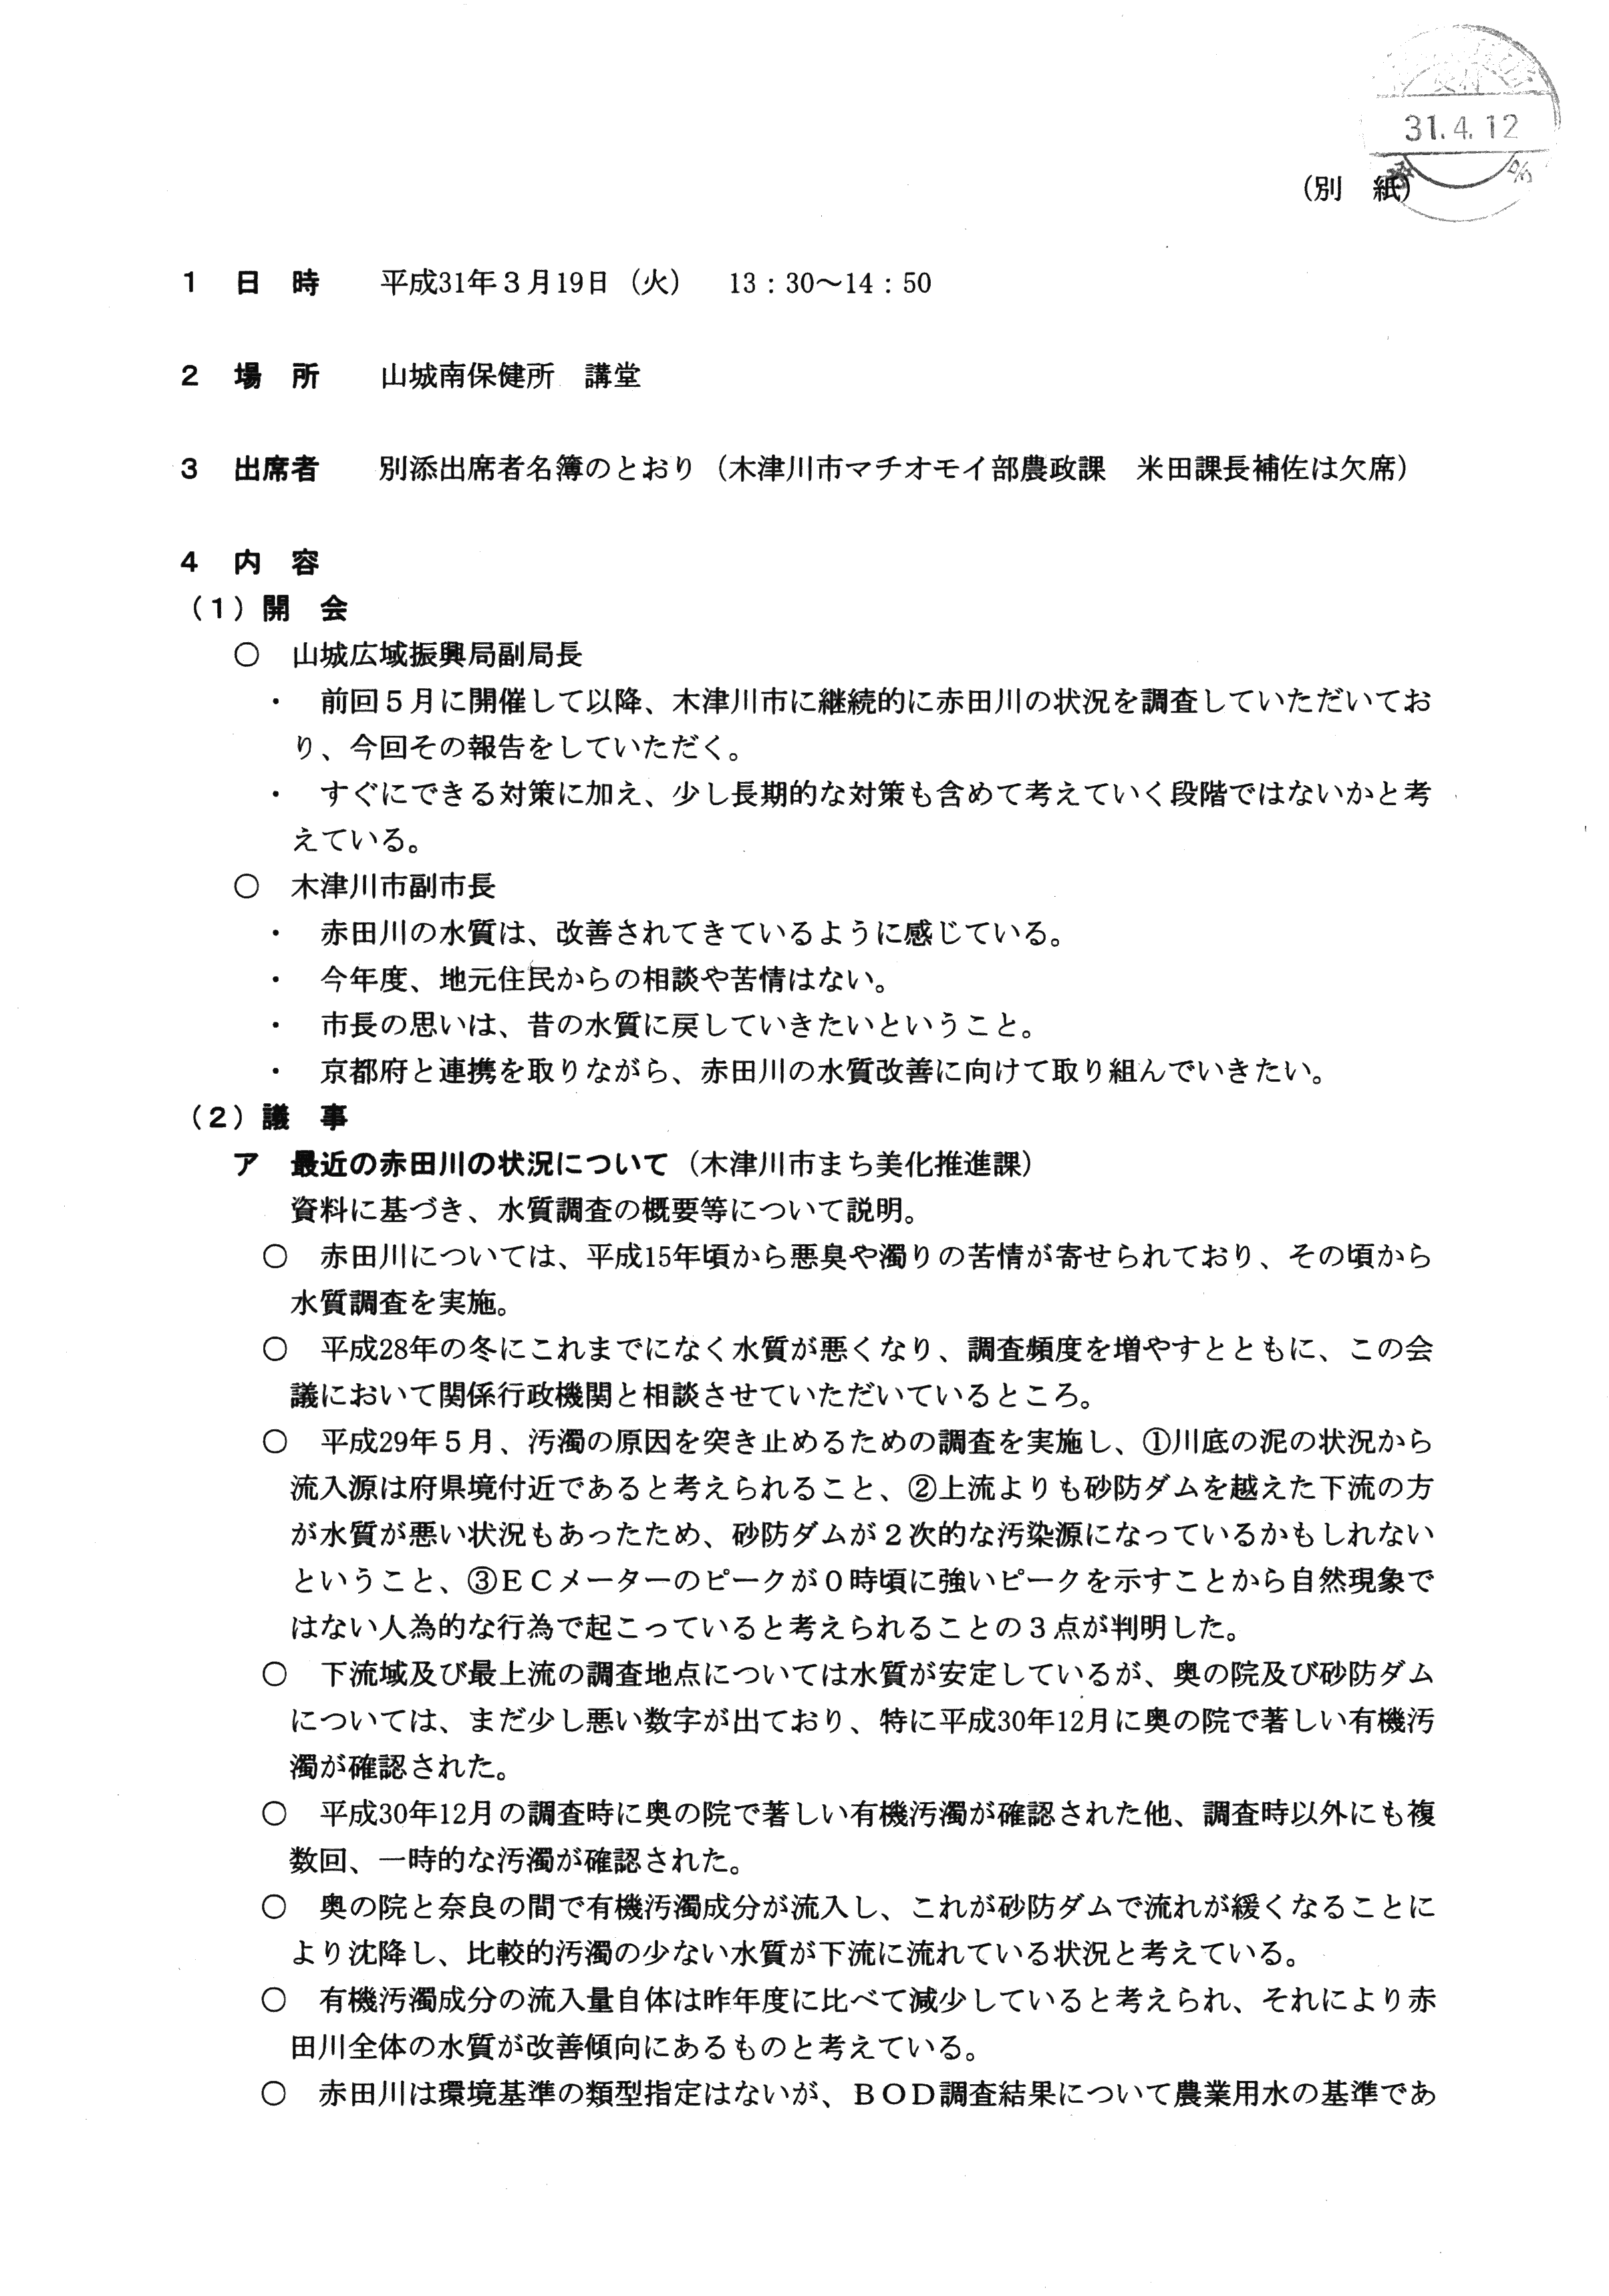 平成31年3月19日-赤田川の水質汚濁に係る連絡調整会議について-01